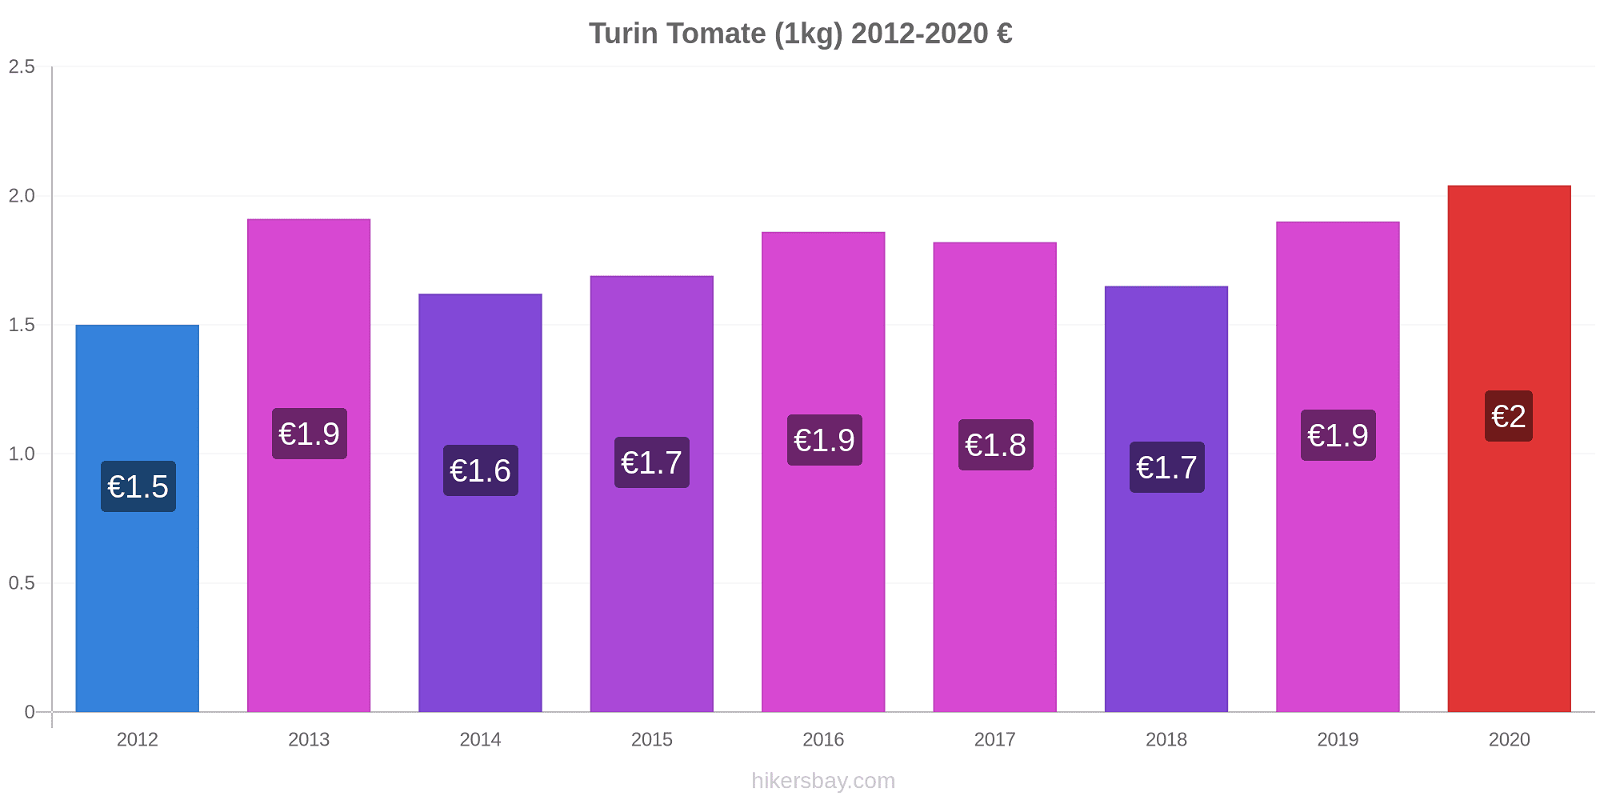 Turin Preisänderungen Tomaten (1kg) hikersbay.com